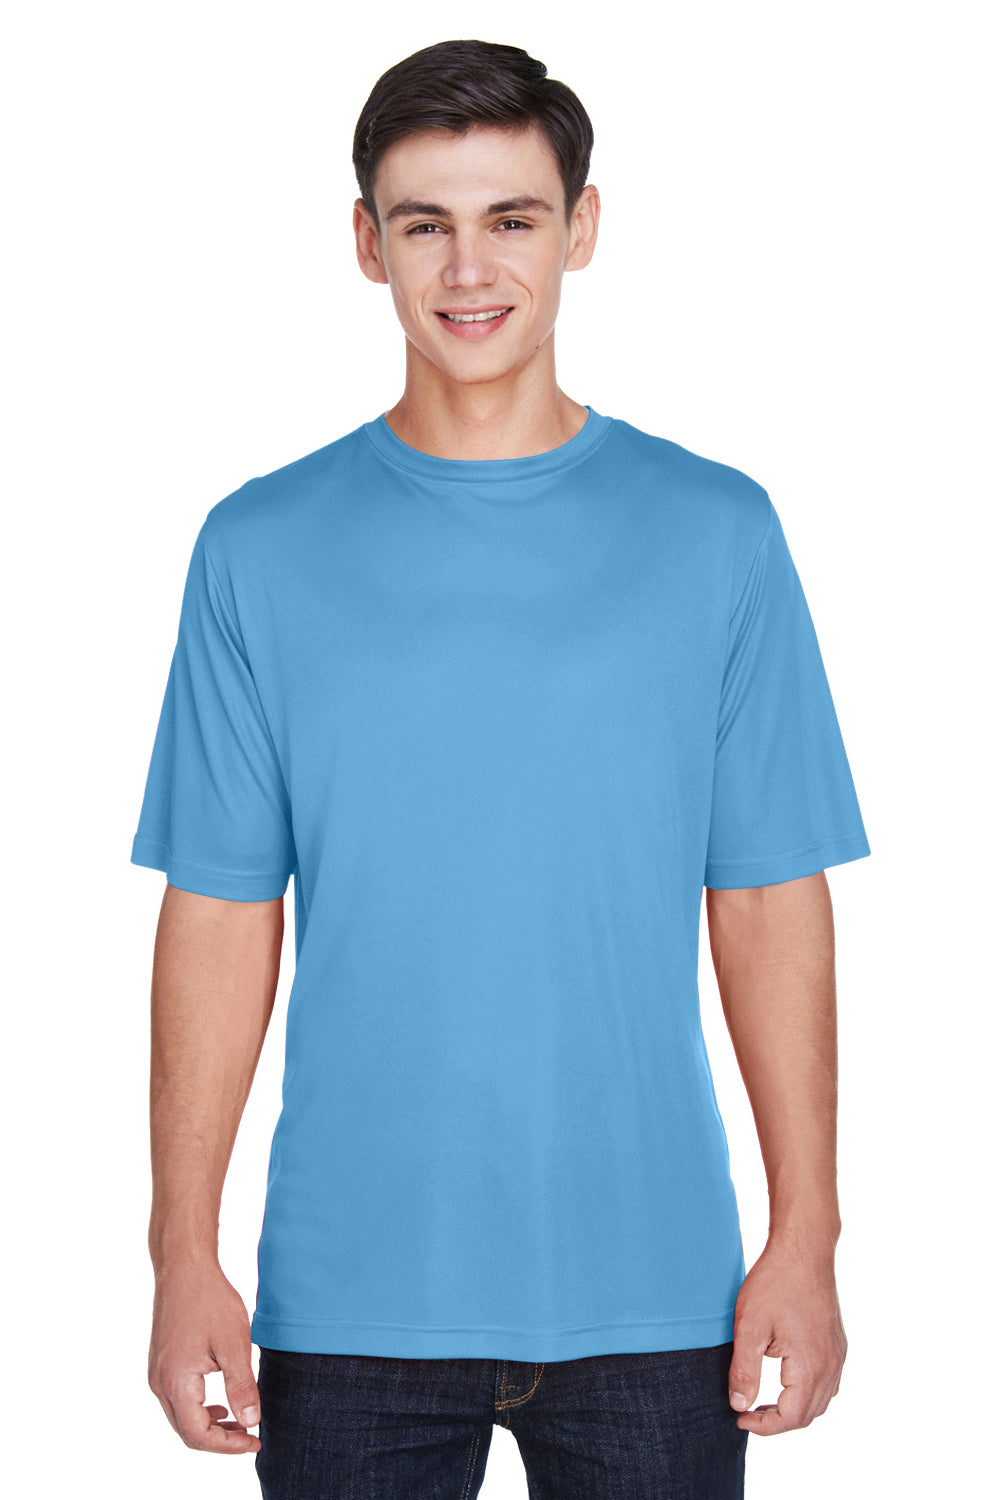 Team 365 TT11 Mens Zone Performance Moisture Wicking Short Sleeve Crewneck T-Shirt Light Blue Front